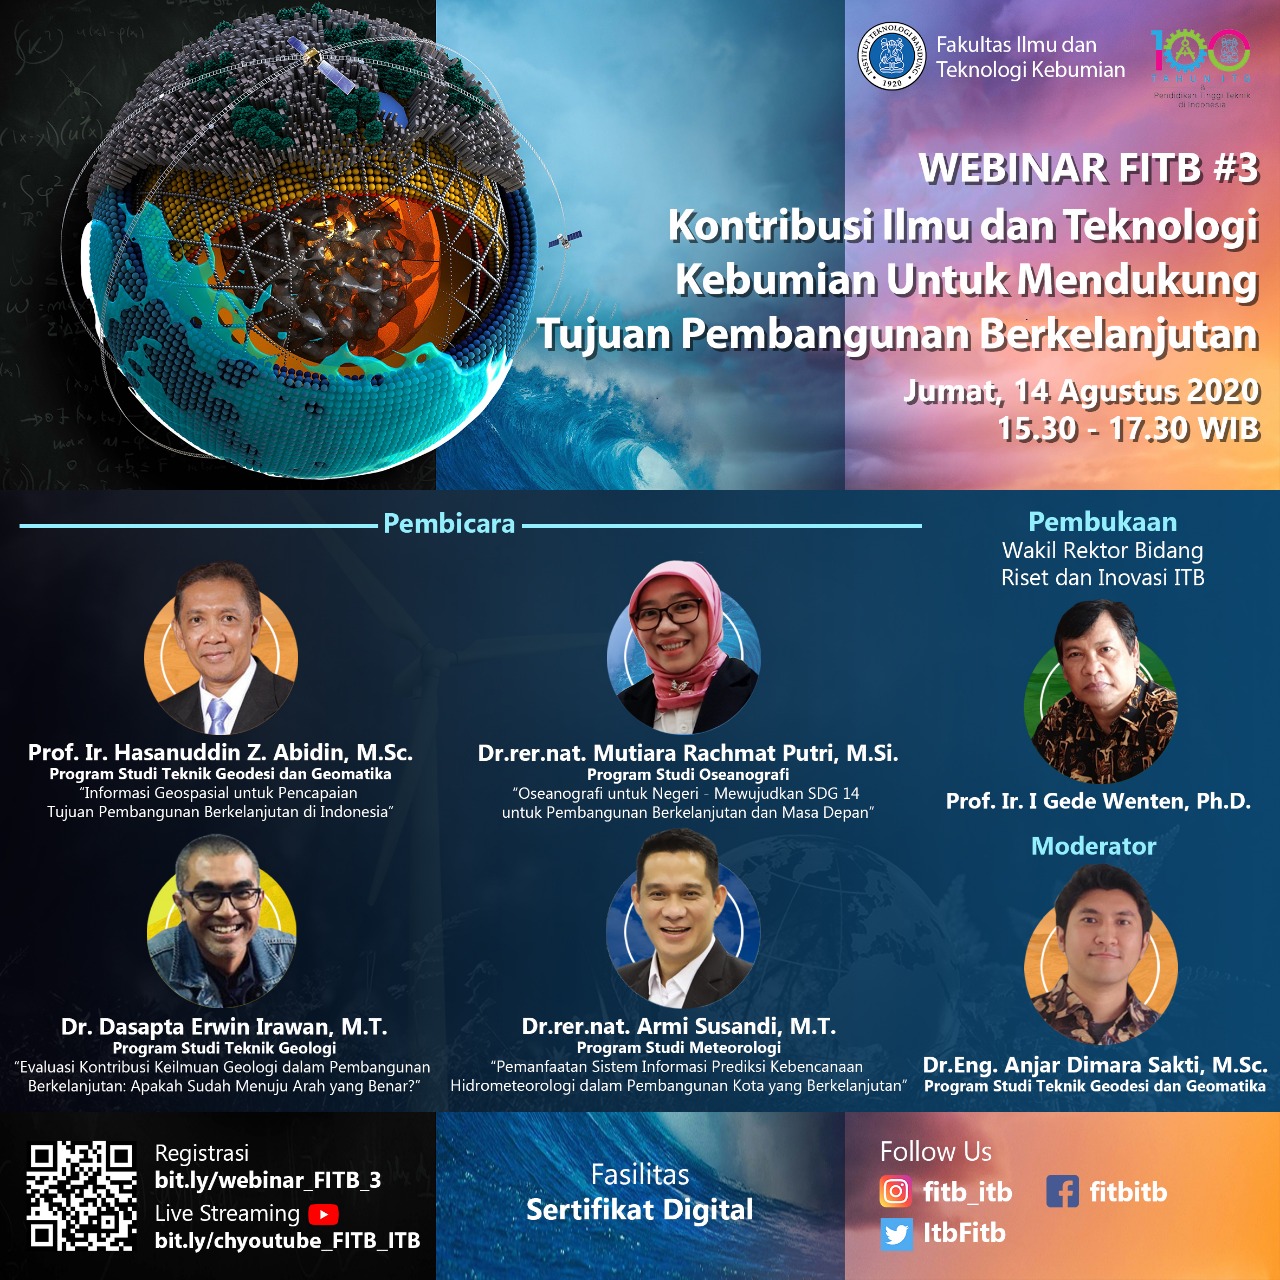 Open Registration : Webinar FITB #3 Kontribusi Ilmu dan Teknologi Kebumian untuk Mendukung Tujuan Pembangunan Berkelanjutan